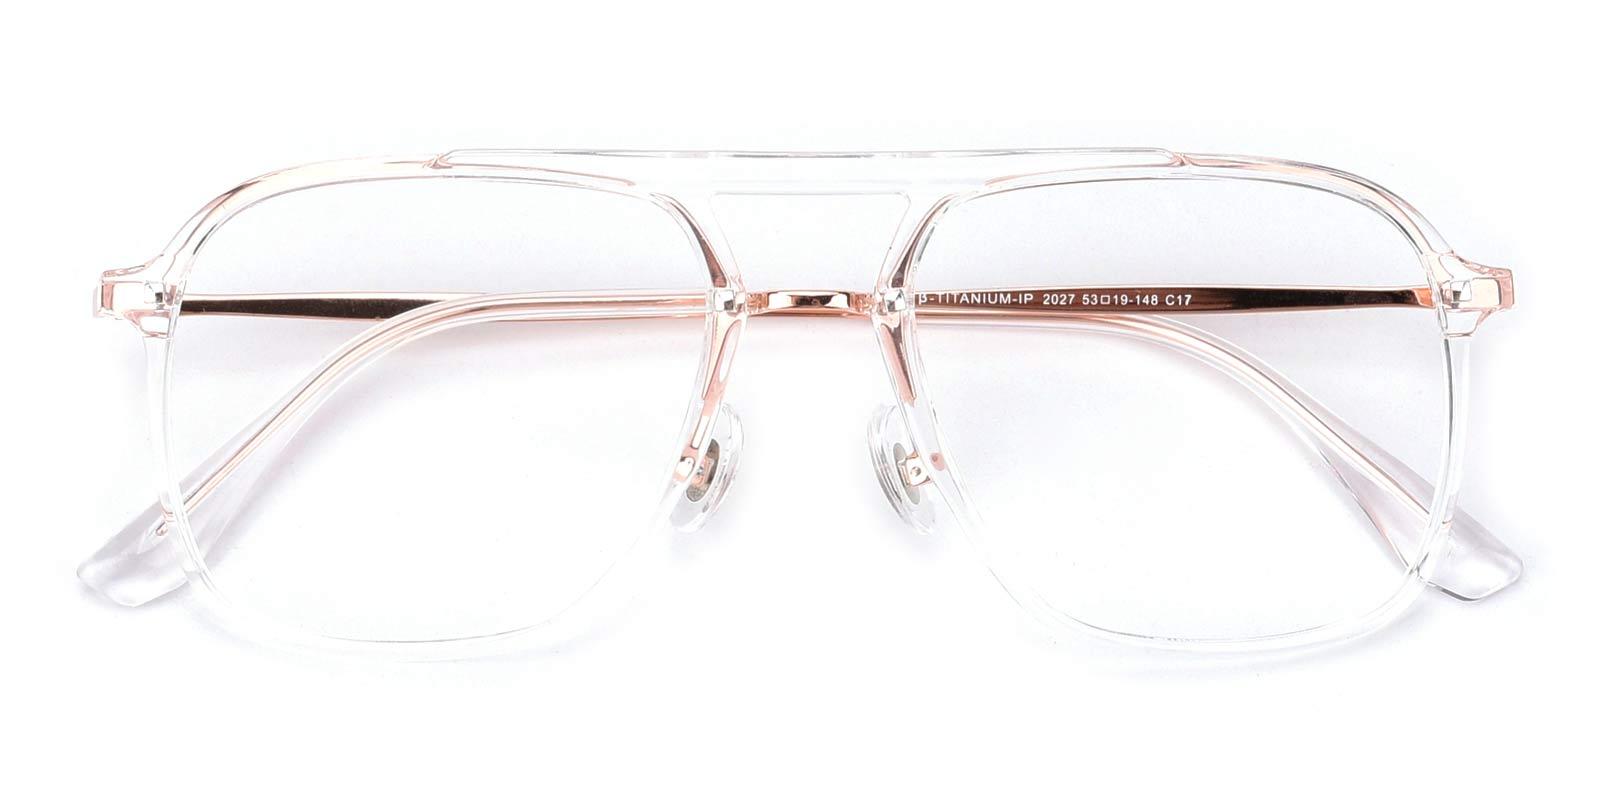 Molly-Translucent-Aviator-TR-Eyeglasses-detail